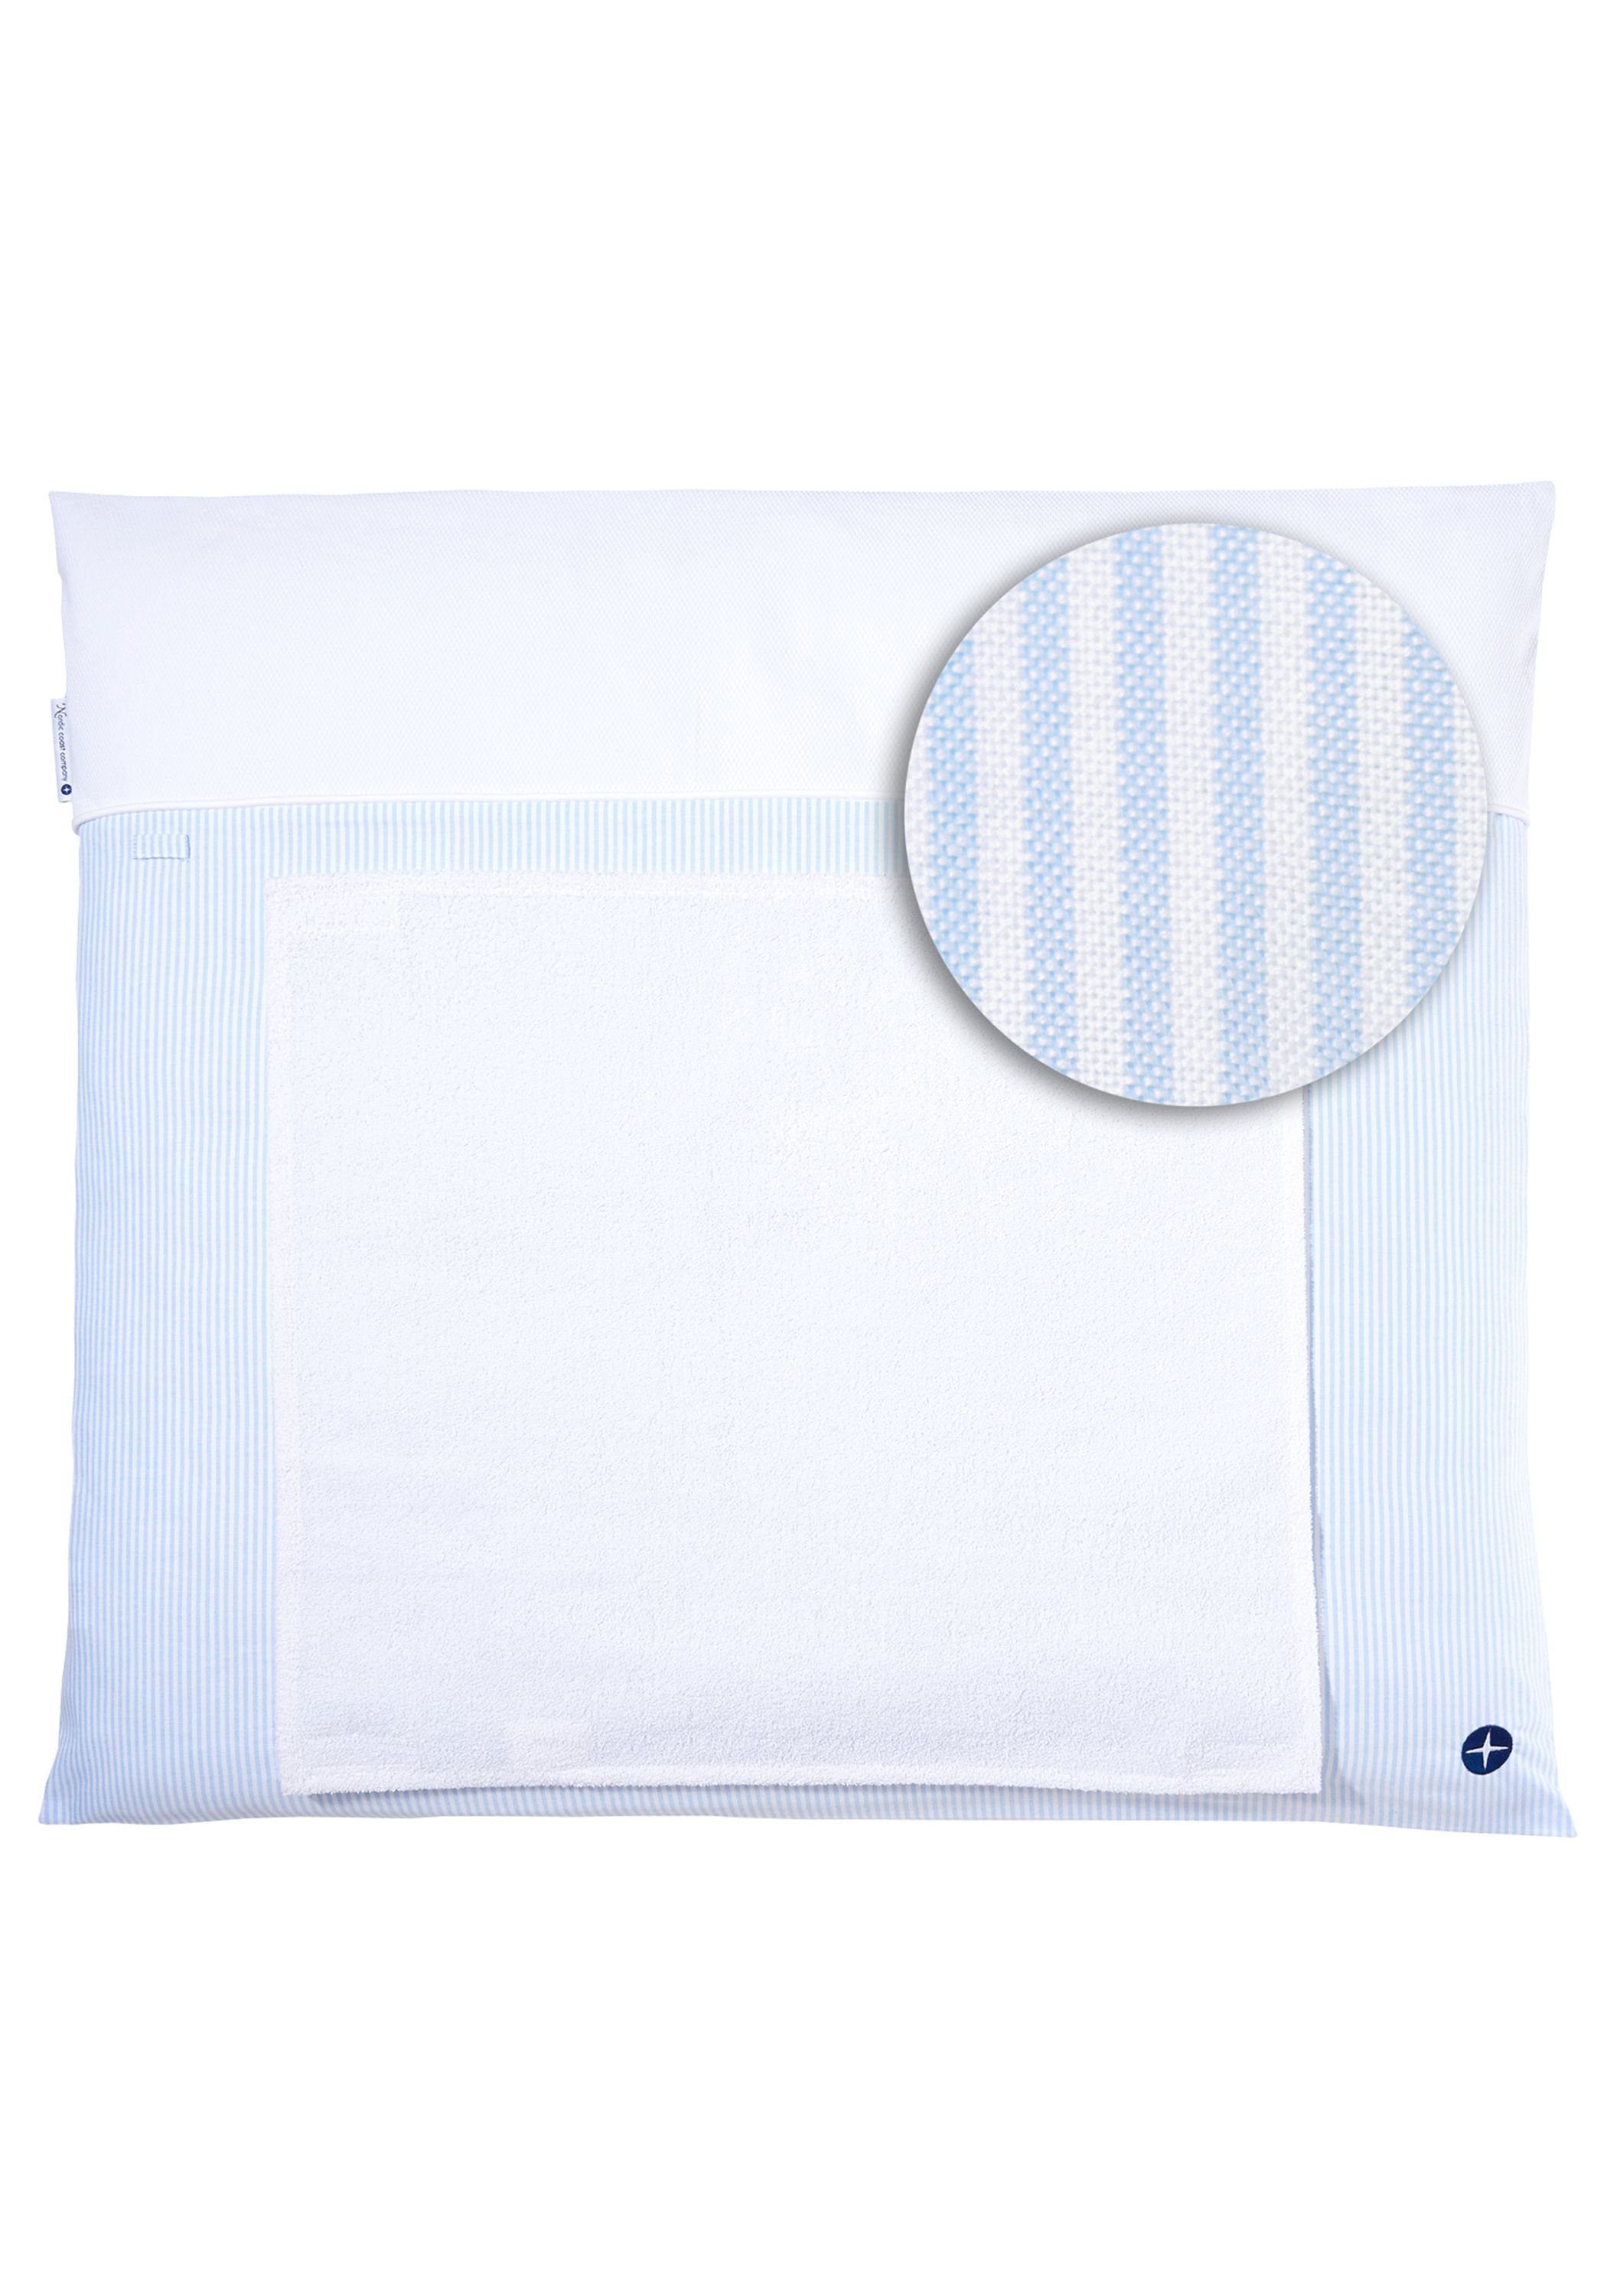 Nordic Coast Company Wickelauflage, Wickelauflage Blau Weiß gestreift [70x80 cm] 100% zertifizierte Baumwolle Wechselbares Handtuch Wickelunterlage Baby Wickeltischauflage